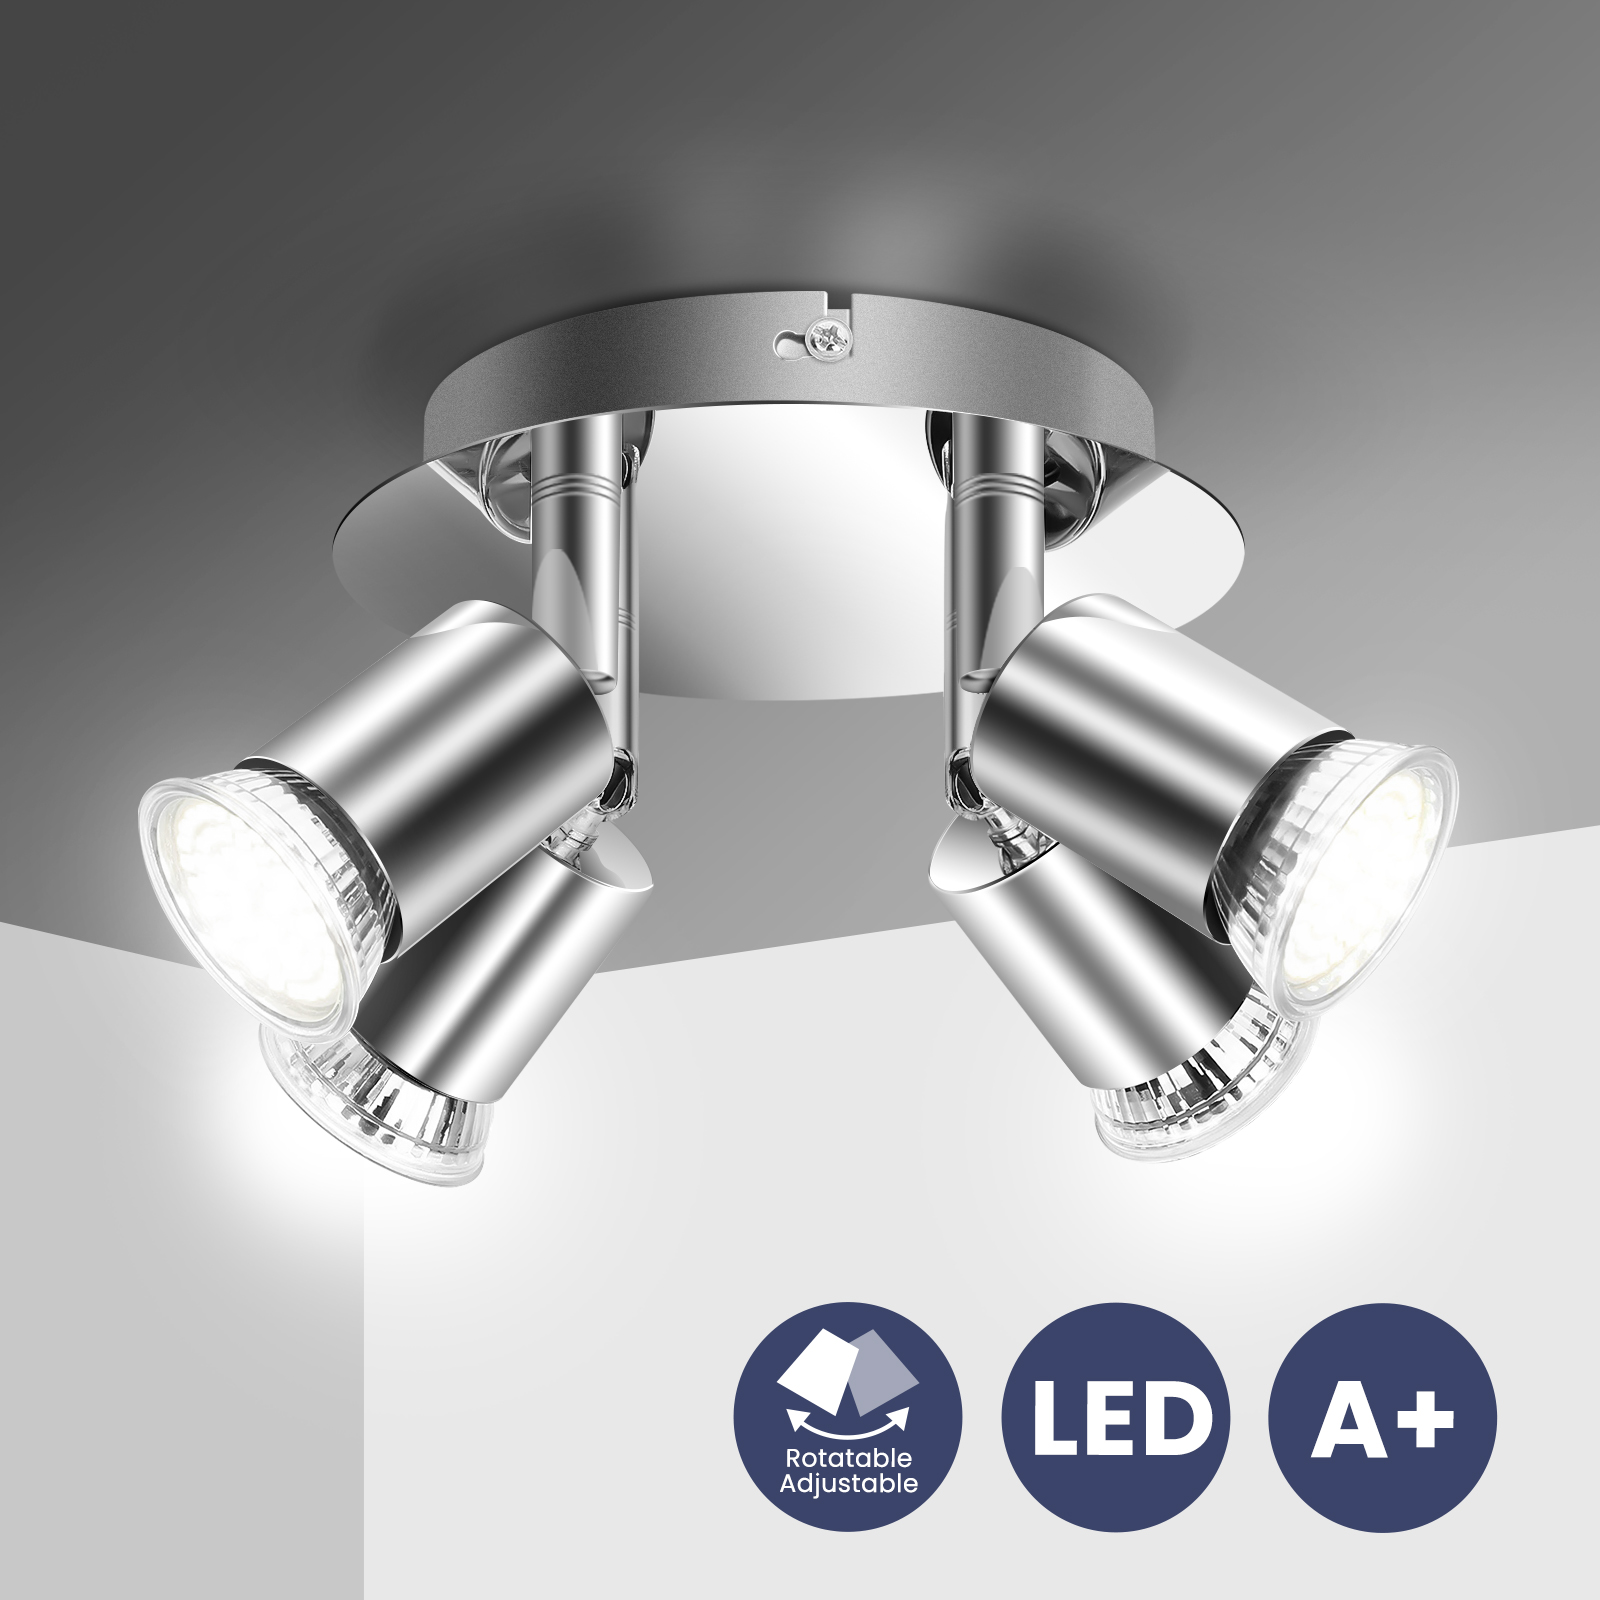 Elfeland-100-220V-4-Way-GU10-LED-Rotatable-Ceiling-Light-Lamp-Bulb-Spotlight-Fitting-Home-Lighting-1888430-1